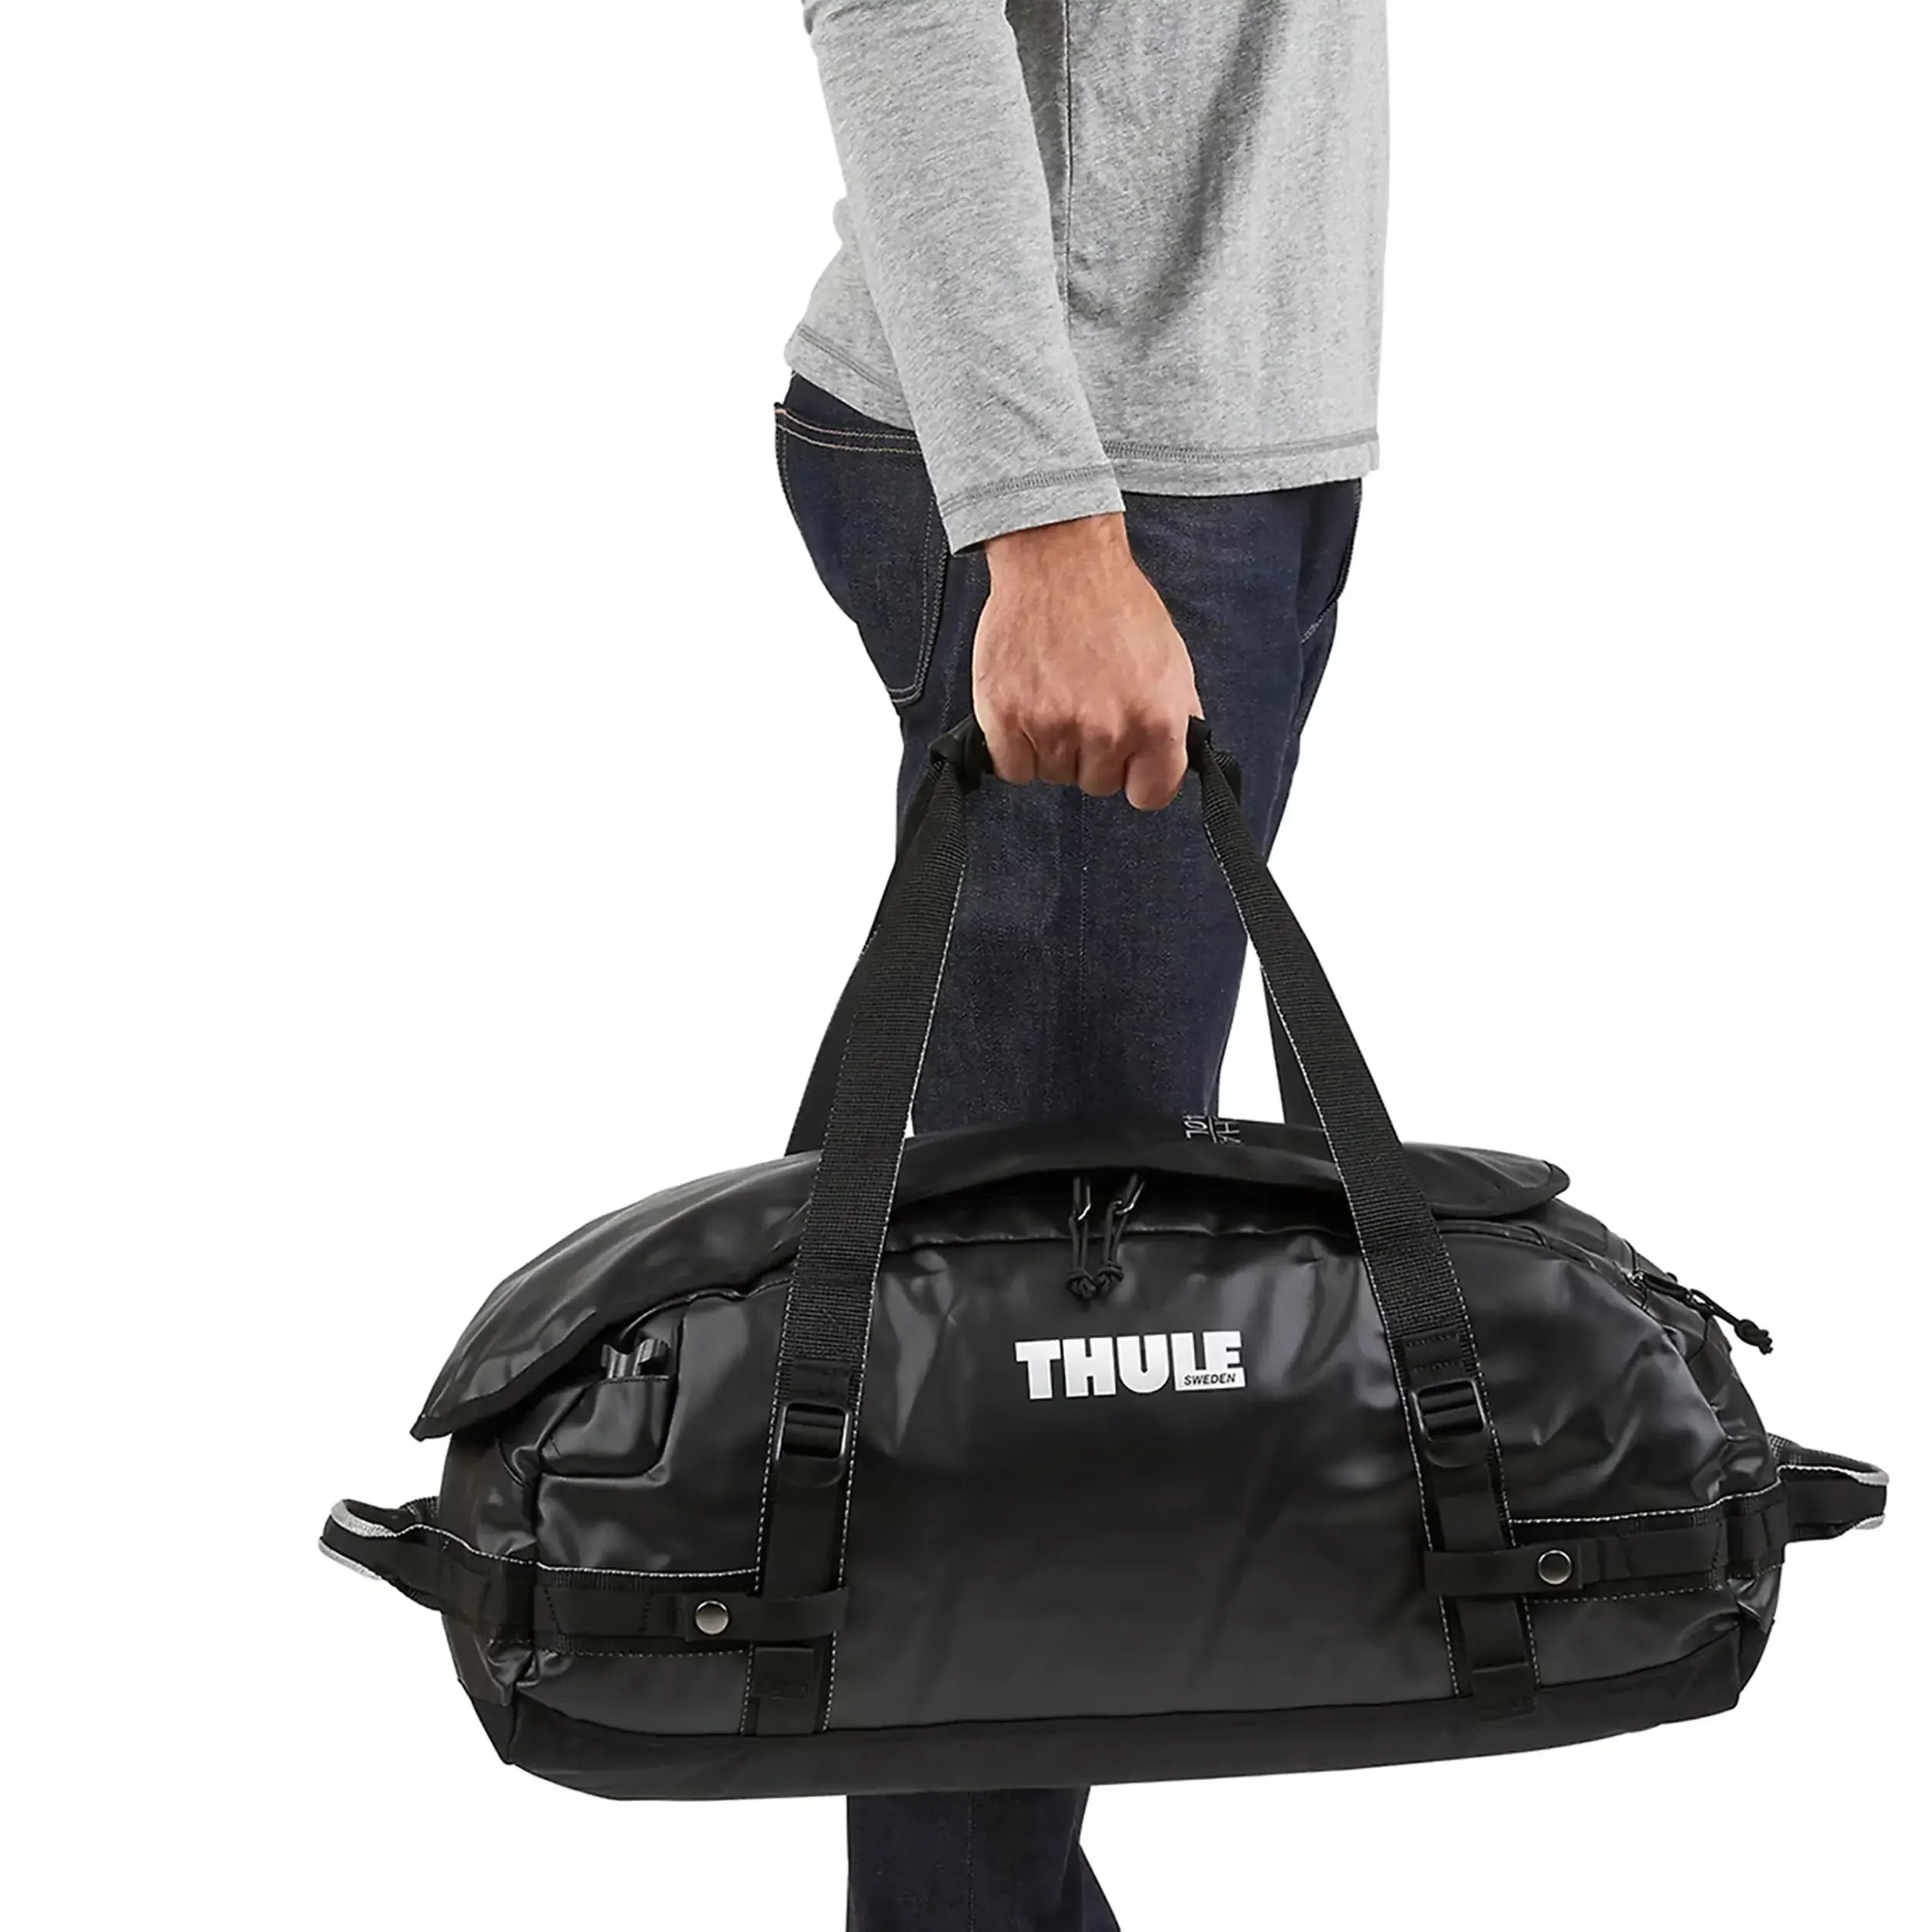 Thule Travel Chasm Travel Bag 56 cm - Olivine